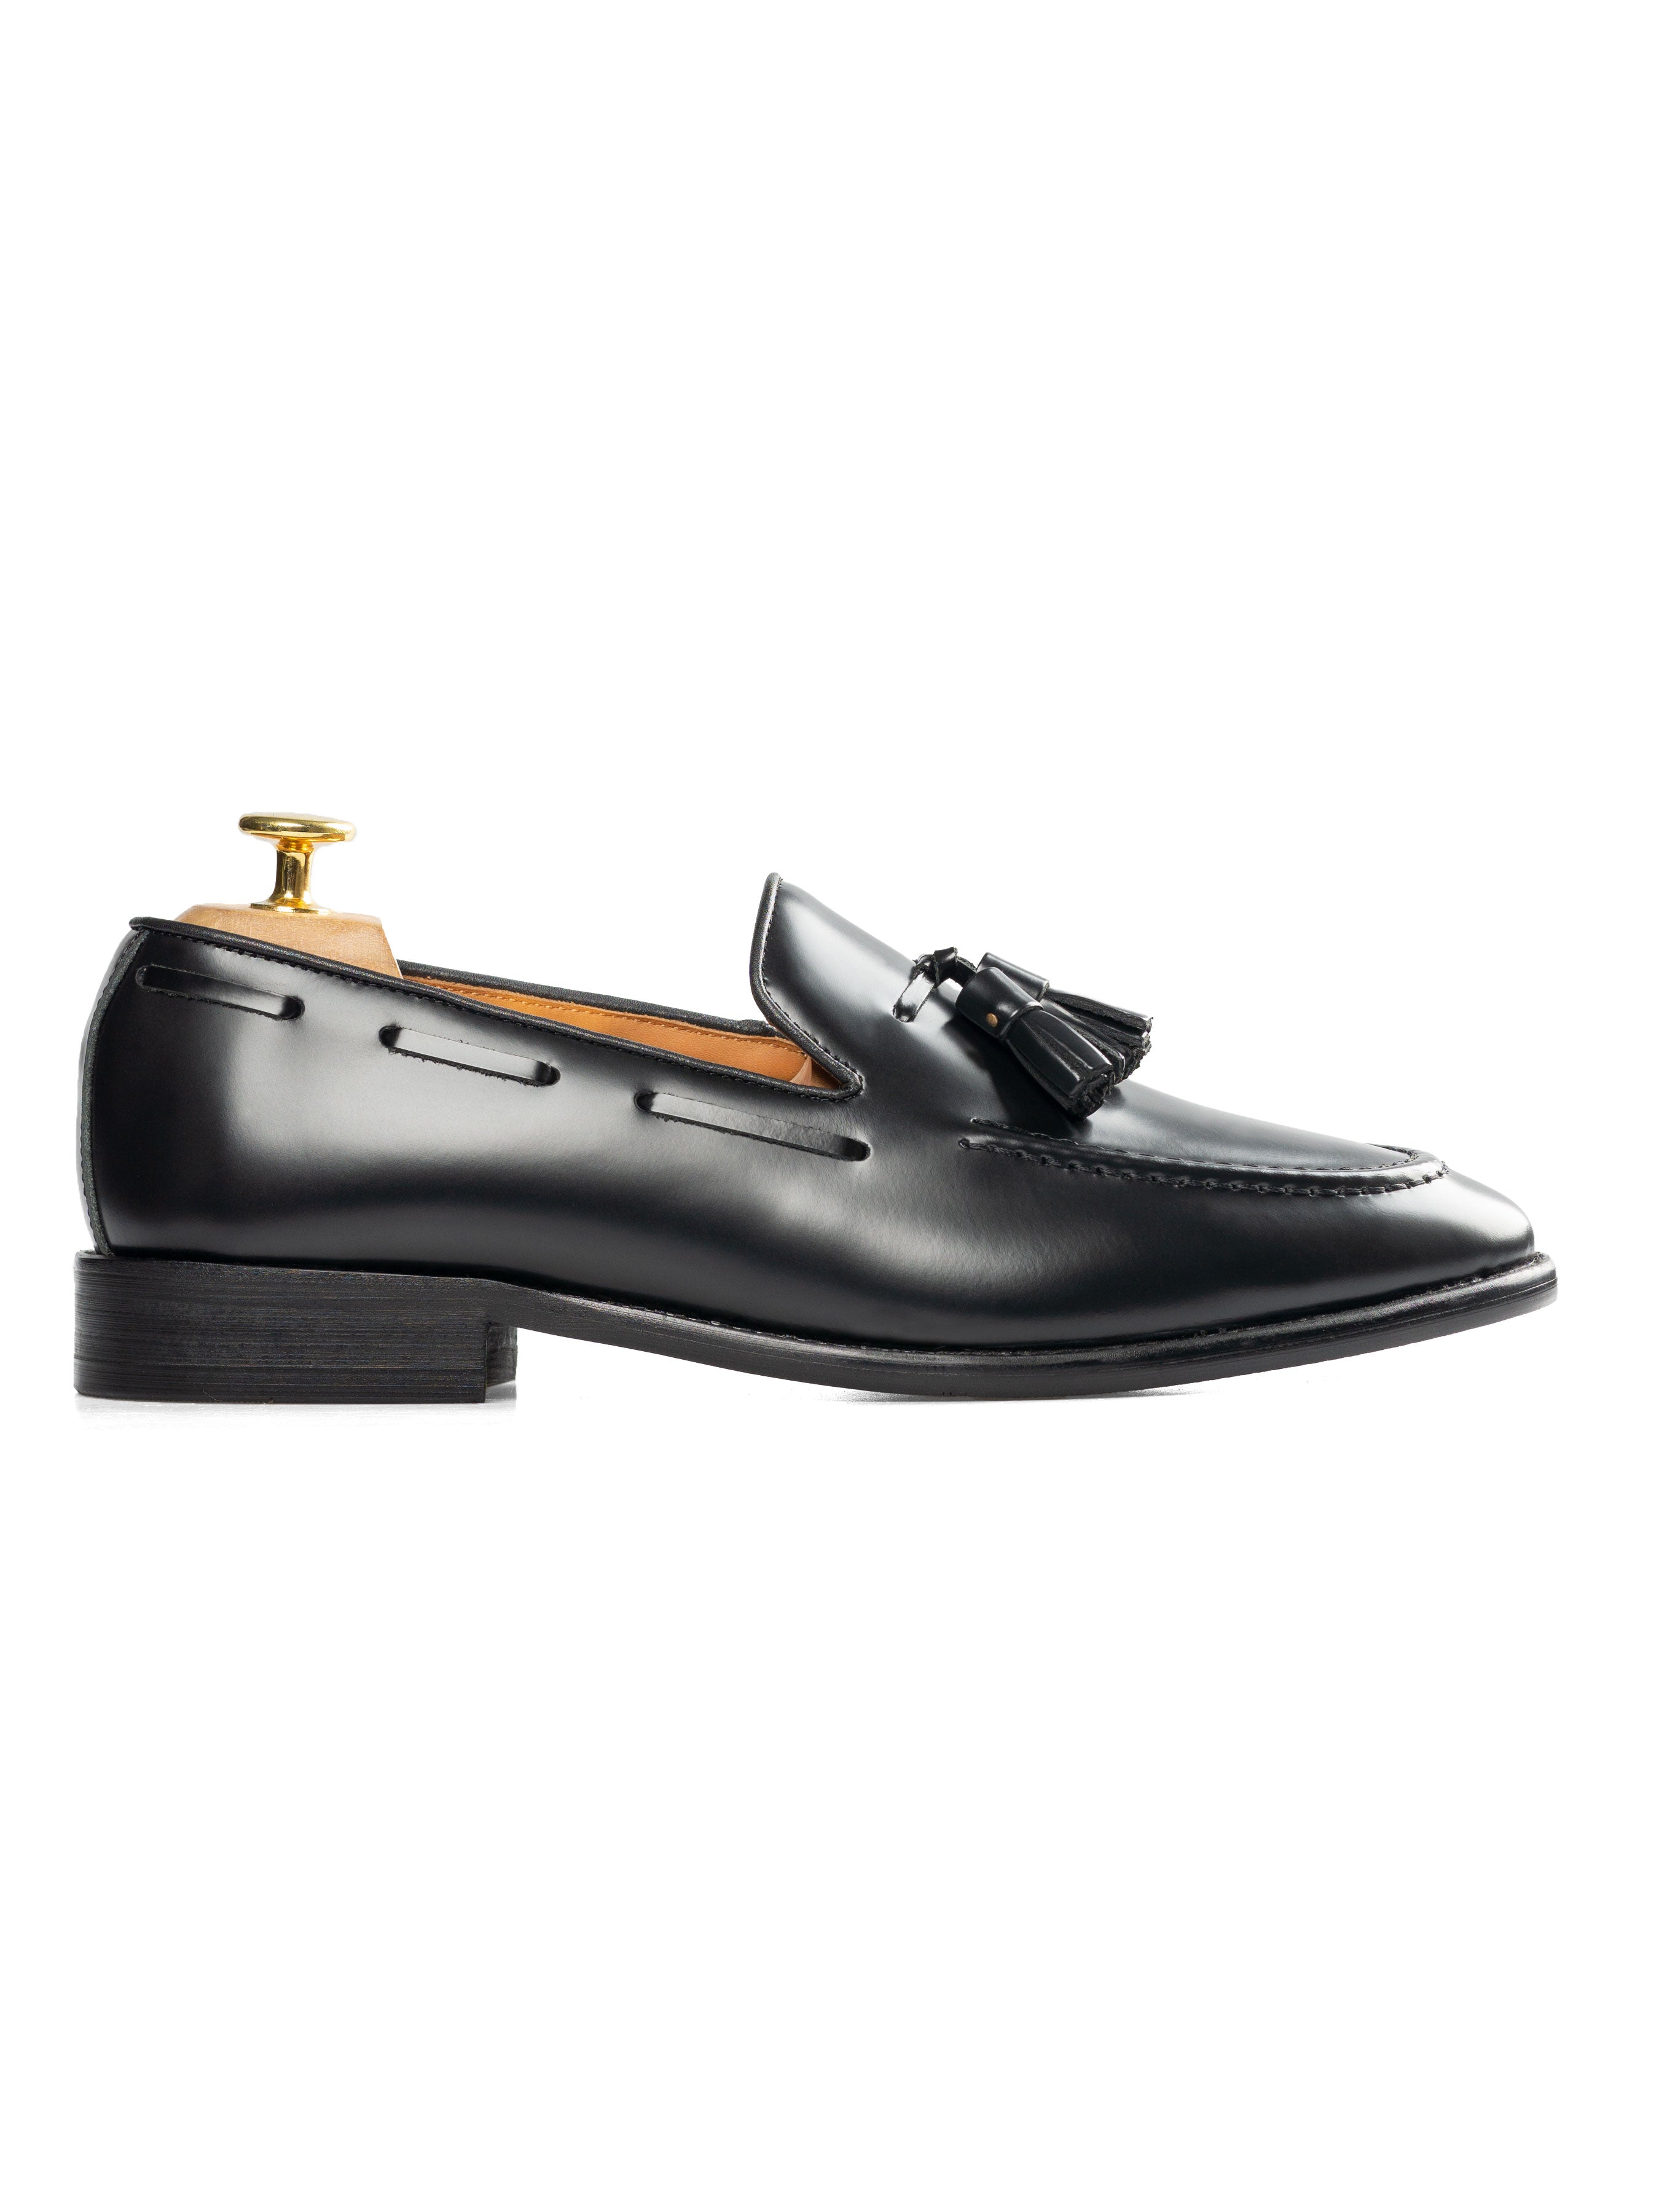 Tassel Loafer - Black Polished Leather - Zeve Shoes